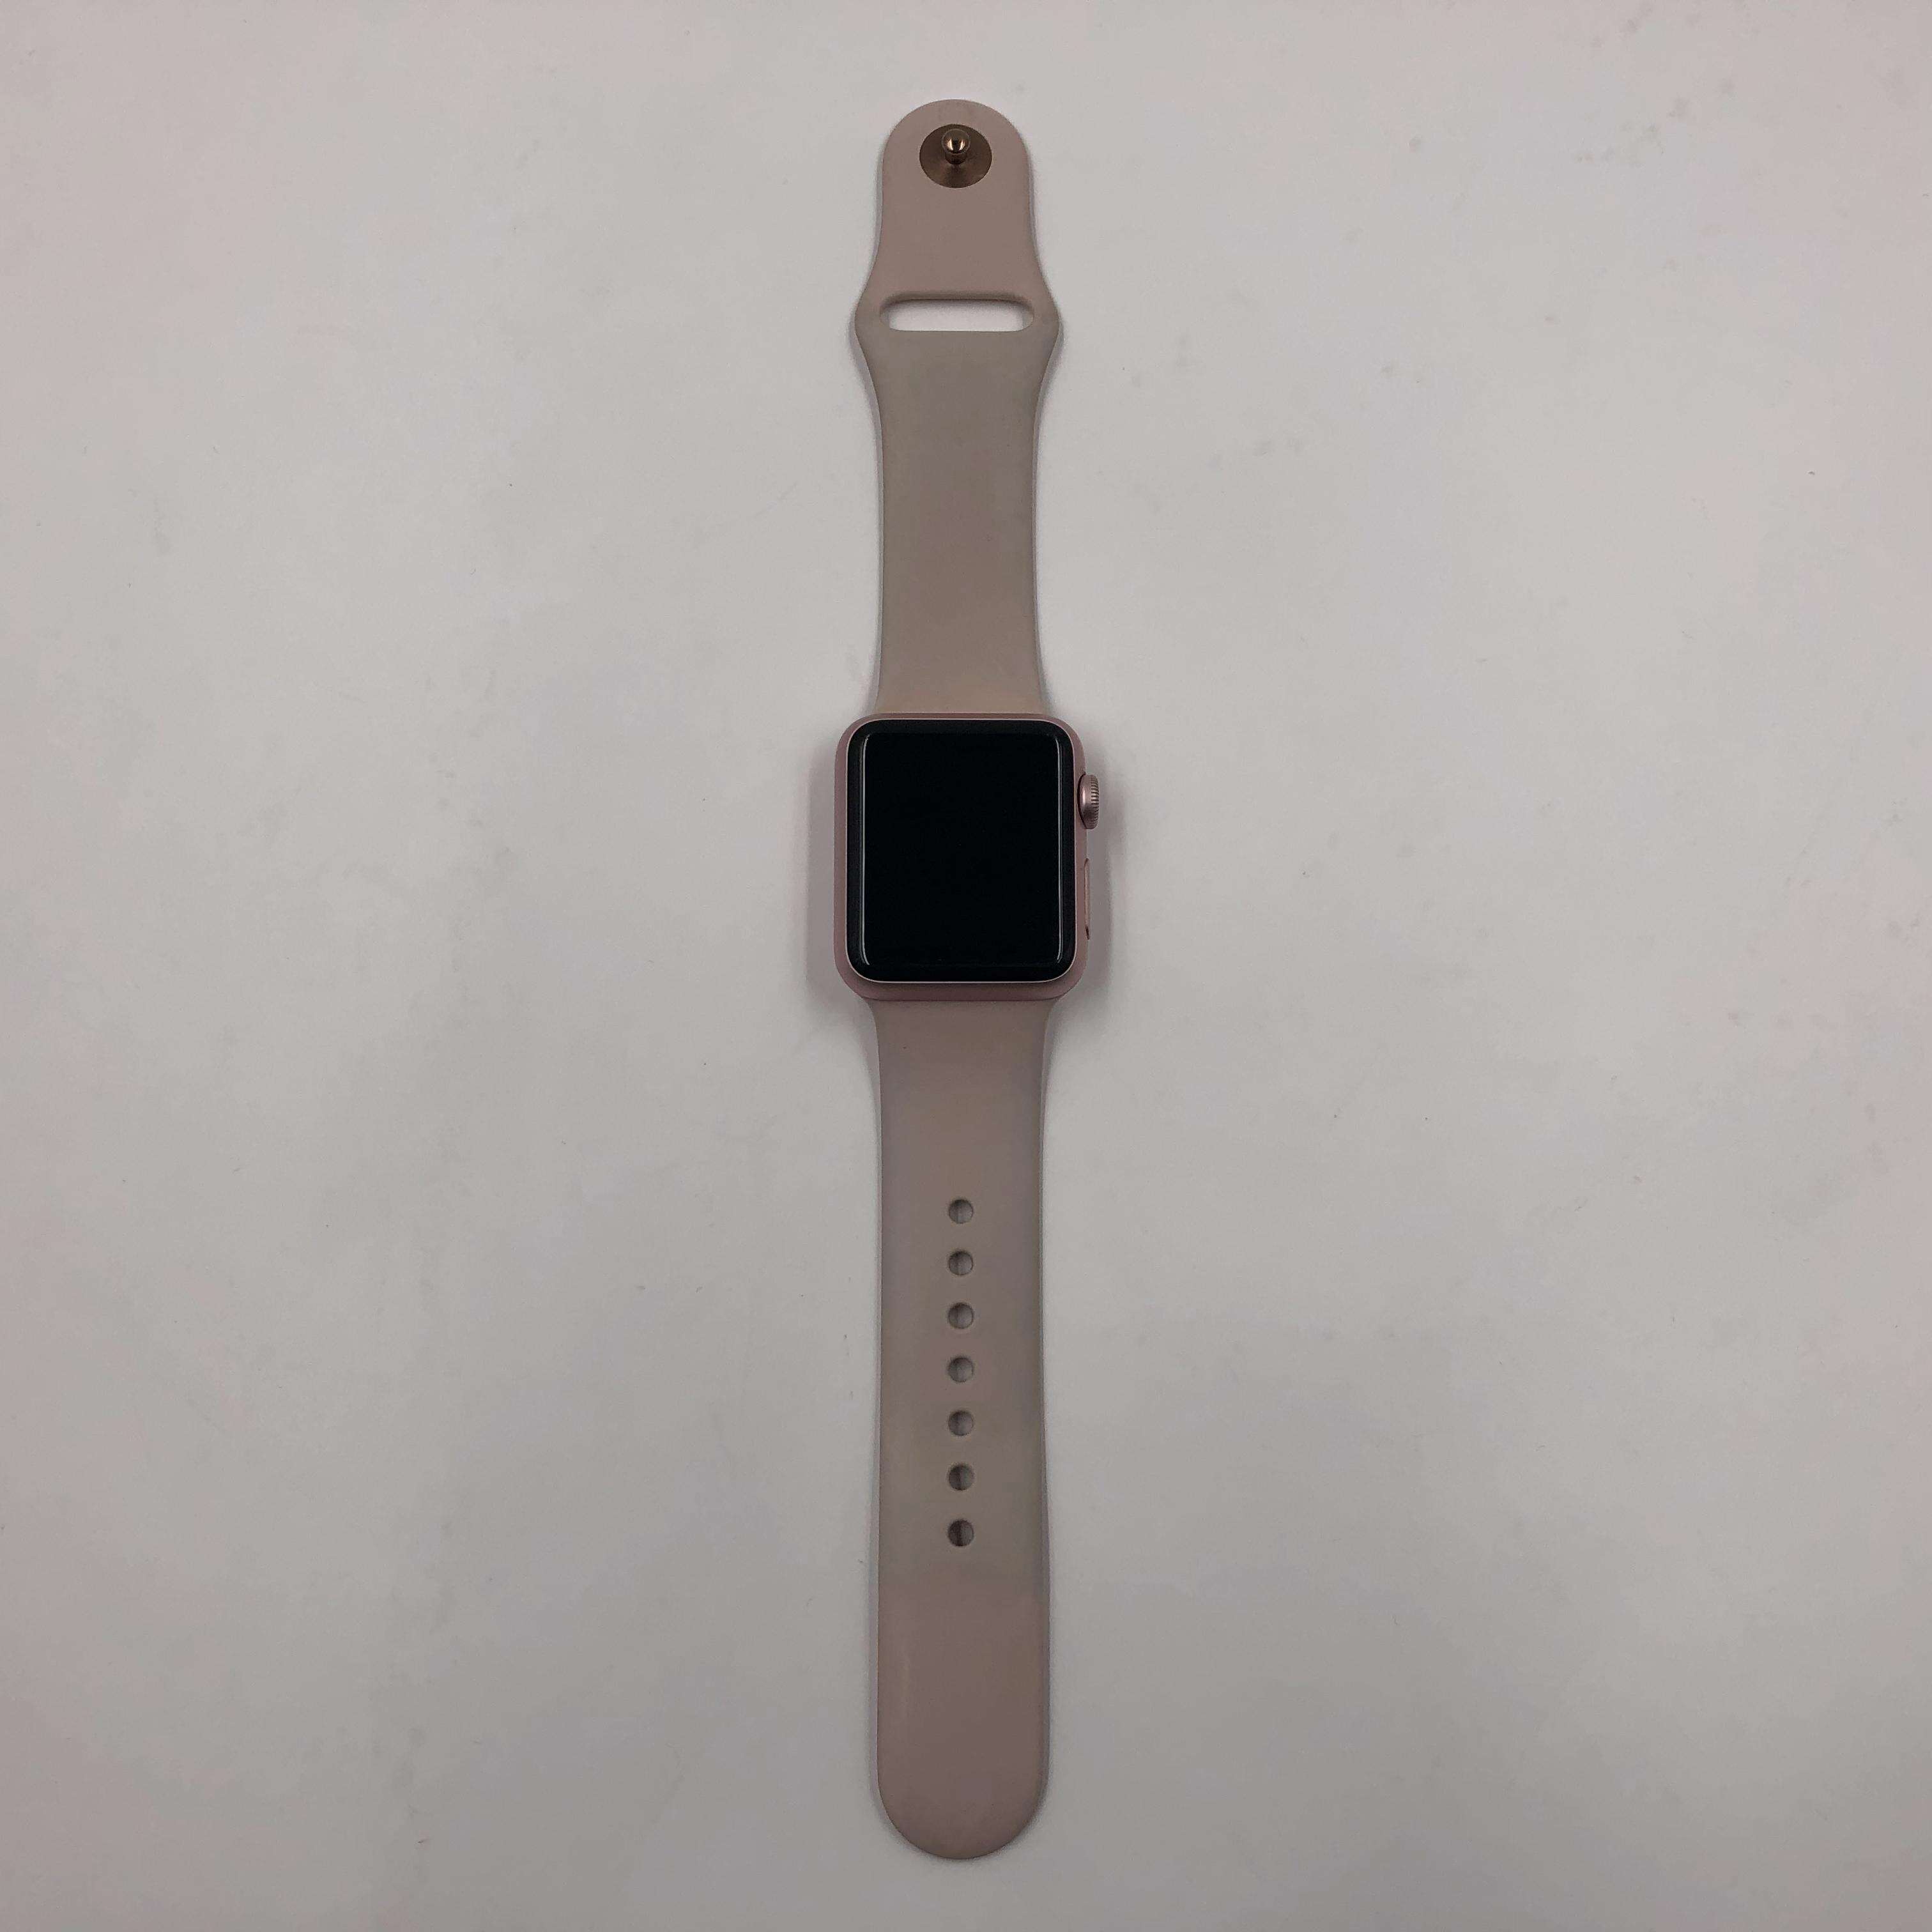 Apple Watch Series 1铝金属表壳 38MM 港版GPS版